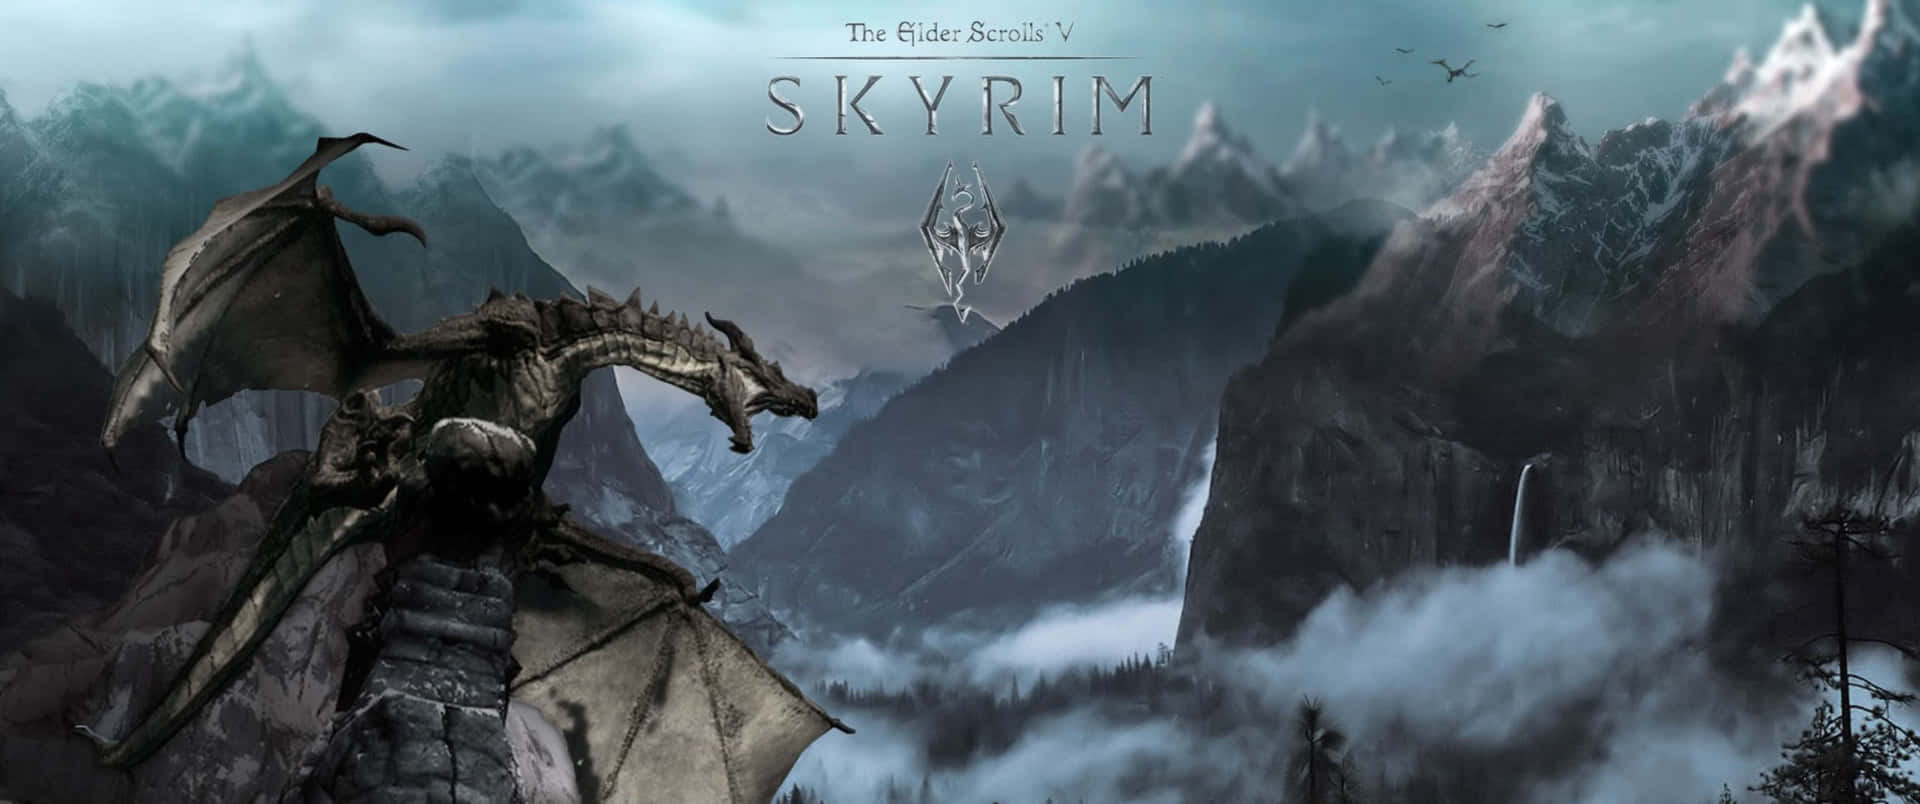 The Elder Scrolls V Skyrim - Epic Fantasy in 4K